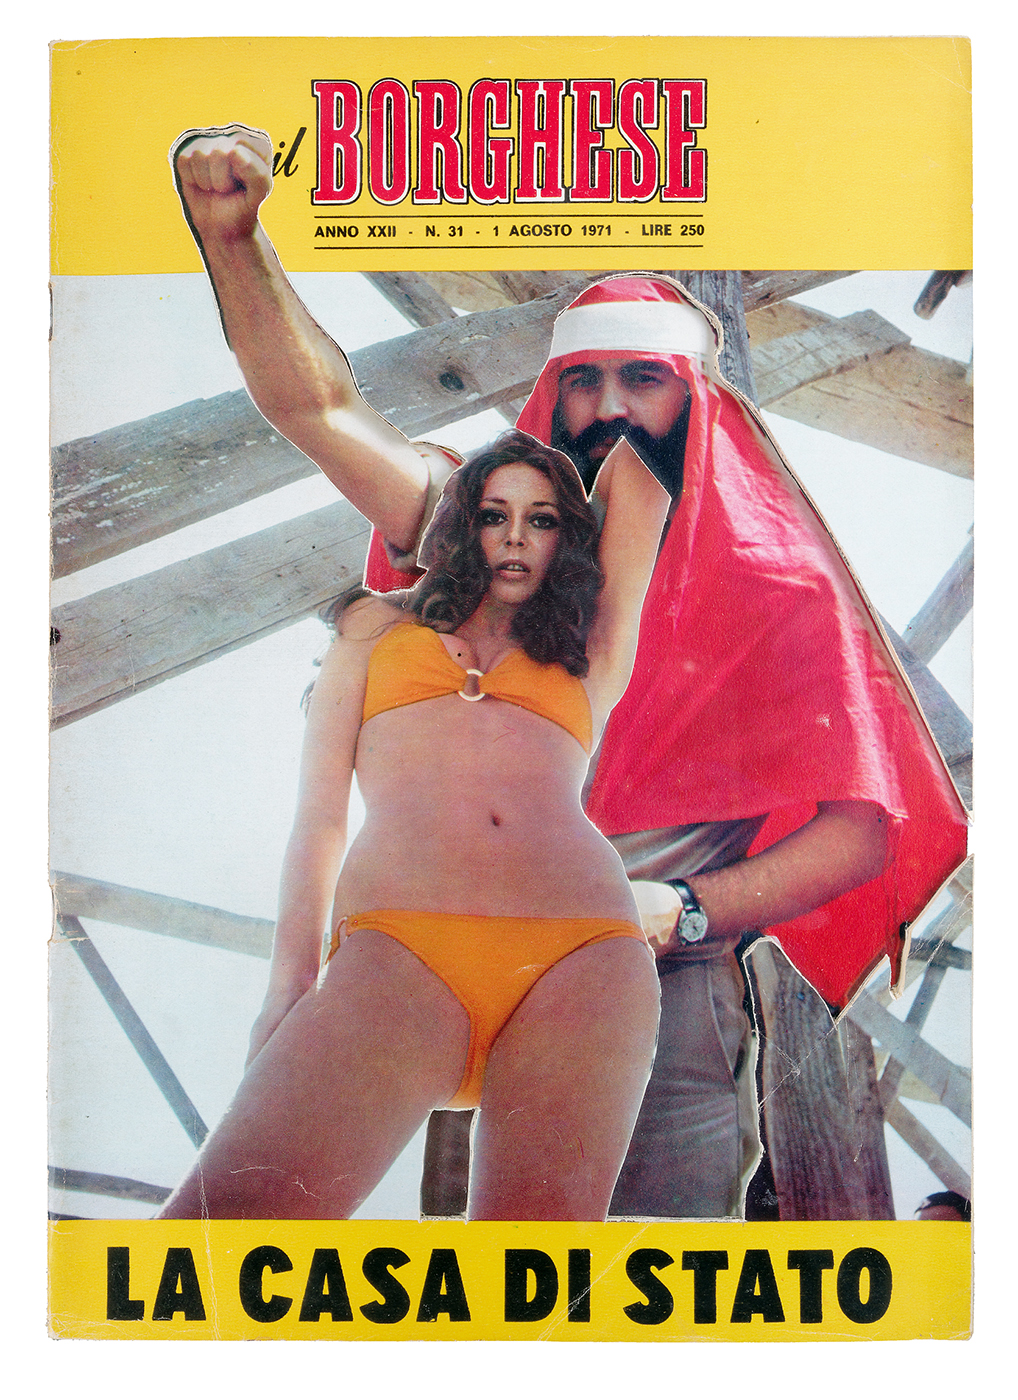 Uncover - Il Borghese 1 Agosto 1971, 2013